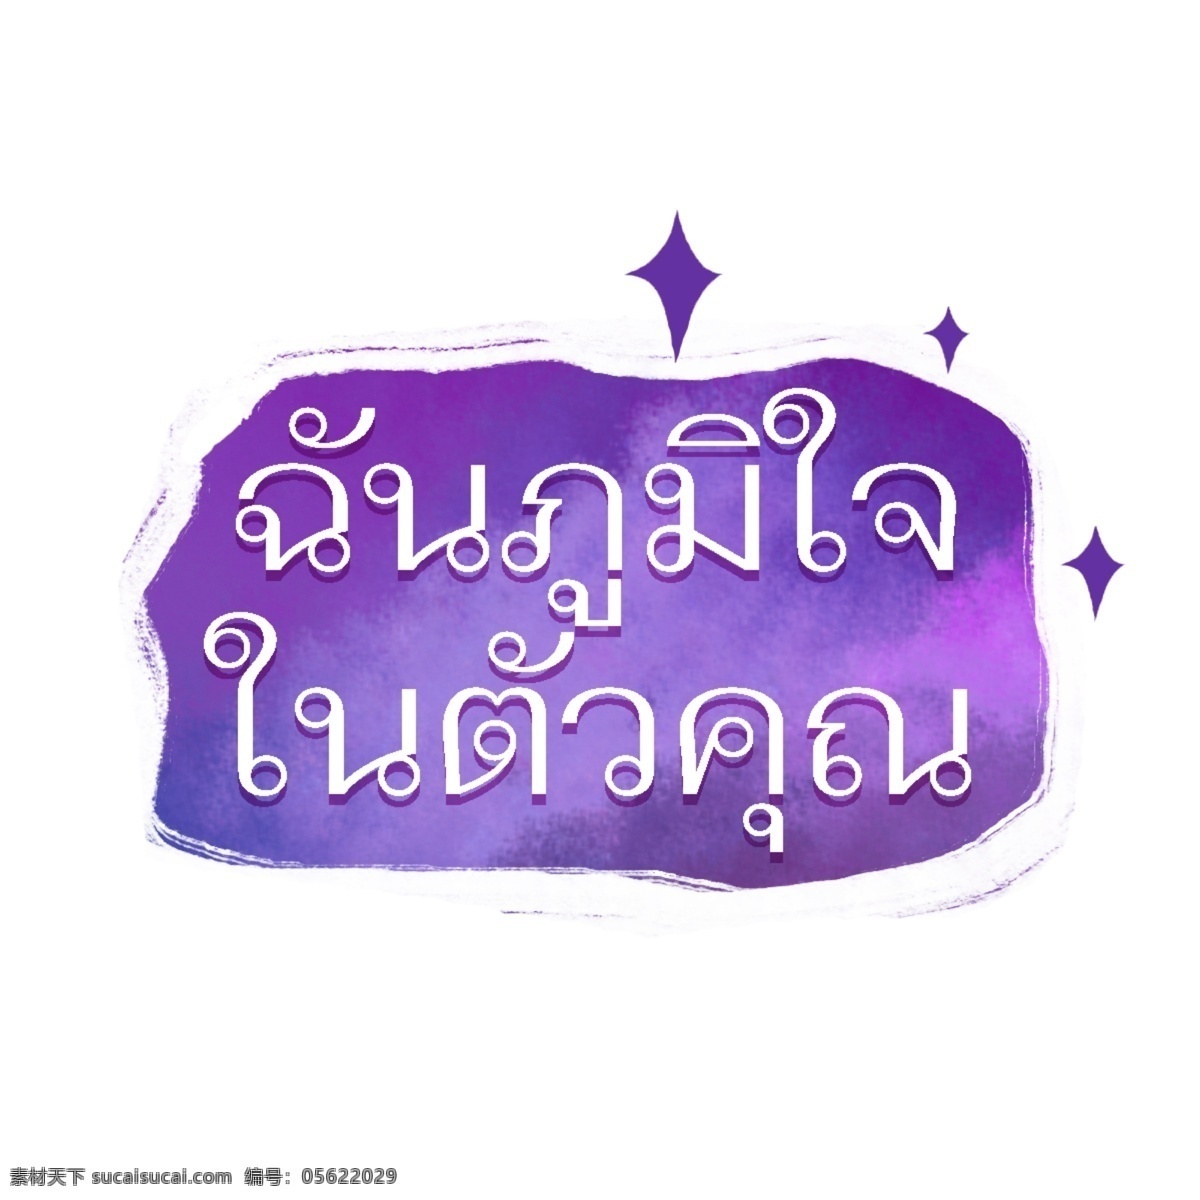 泰国 文字 字体 骄傲 白 紫色 背景 紫色的背景 为你骄傲 白色